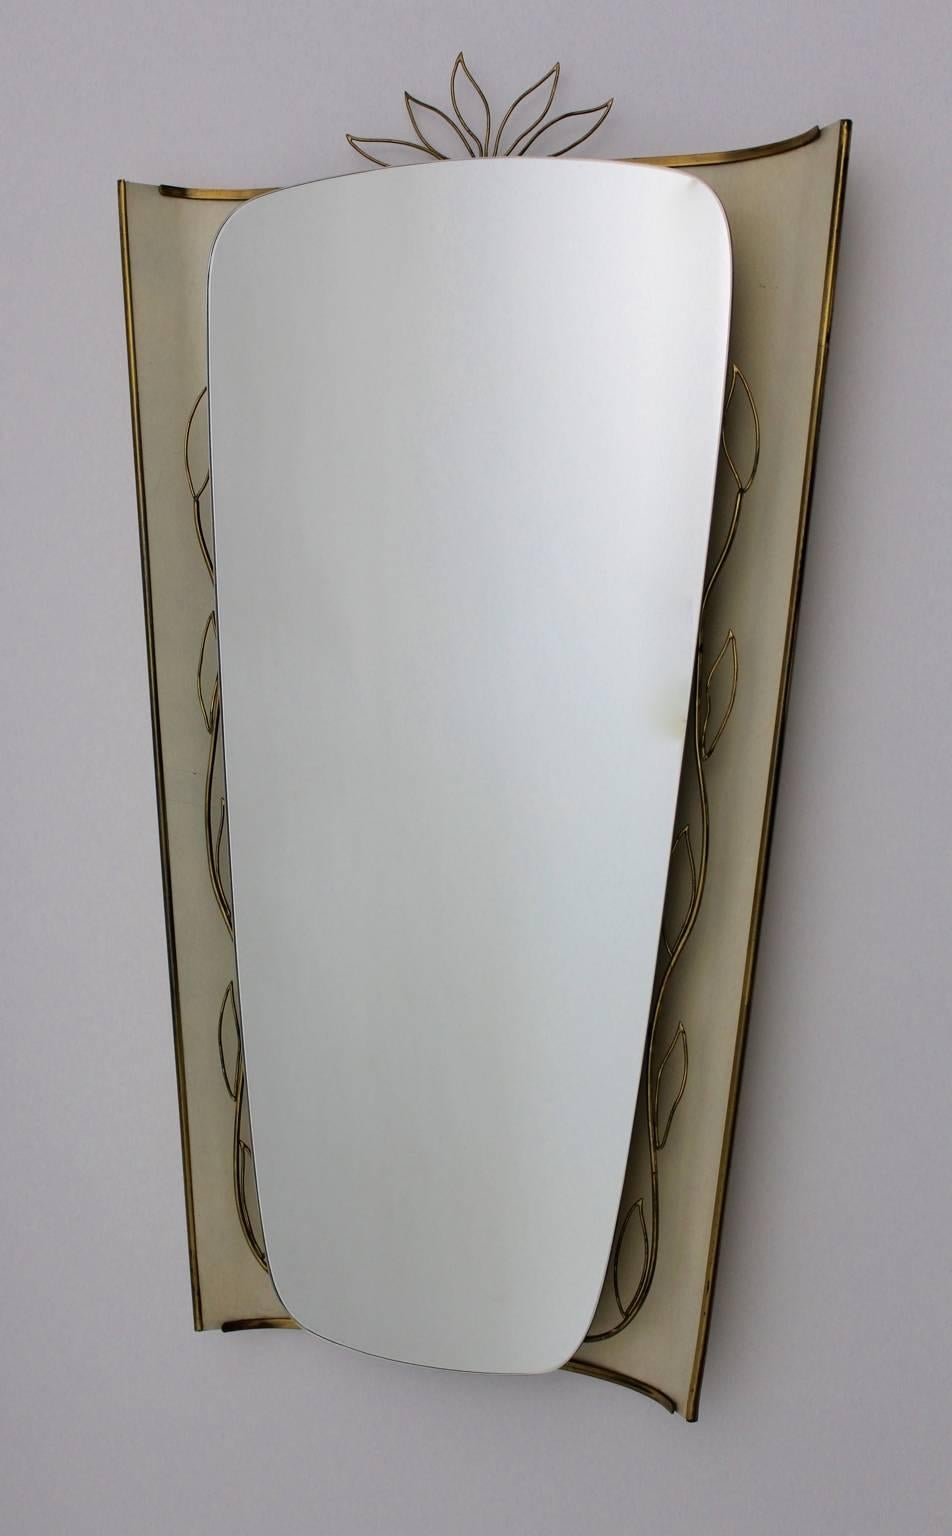 Mid-Century Modern Vintage beleuchteter Wand- oder Bodenspiegel im Stil Gio Ponti, 1950er Jahre Deutschland, aus Blech und Messing. in Buttercreme Farbton.
Während der Wandspiegel ein zartes, geschwungenes Messingdekor aufweist, wirkt der elfenbein-